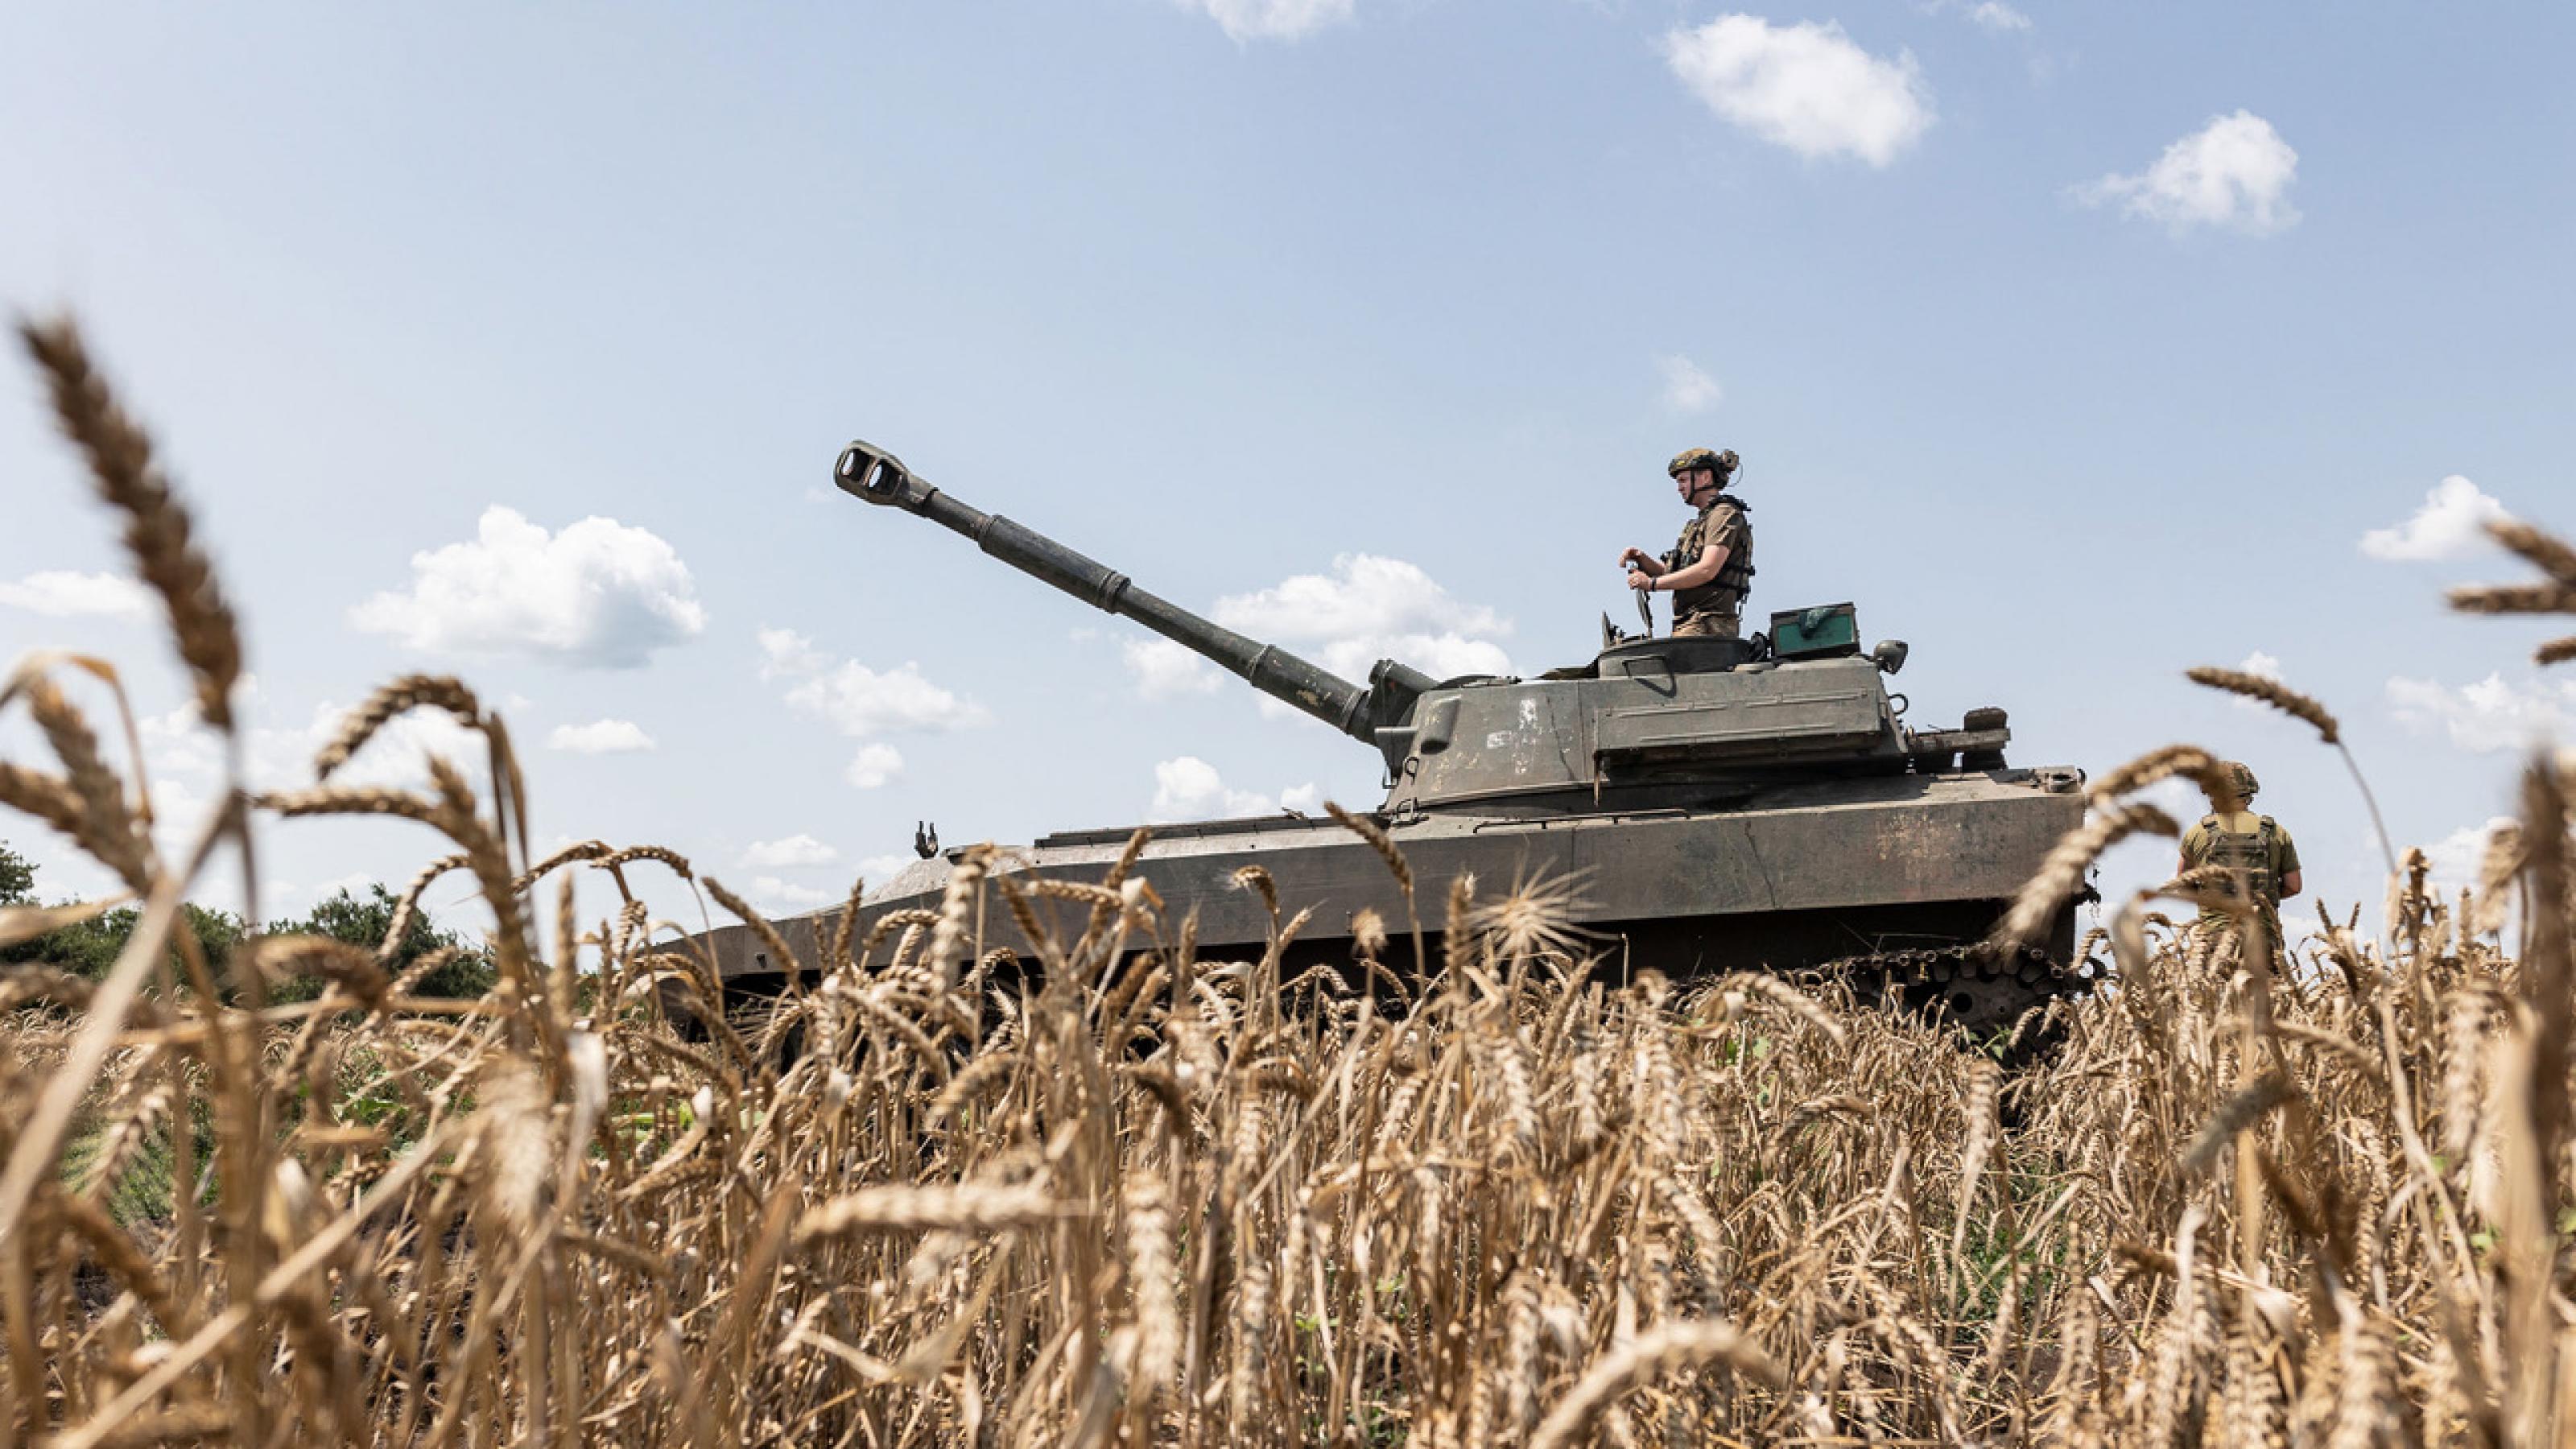 Eine Totale zeigt einen Panzer inmitten eines Getreidefeldes. Ein ukrainischer Soldat steht mit dem Panzer mitten im Getreidefeld. Der Soldat verteidigt das Gebiet Donezk gegen die russische Armee.